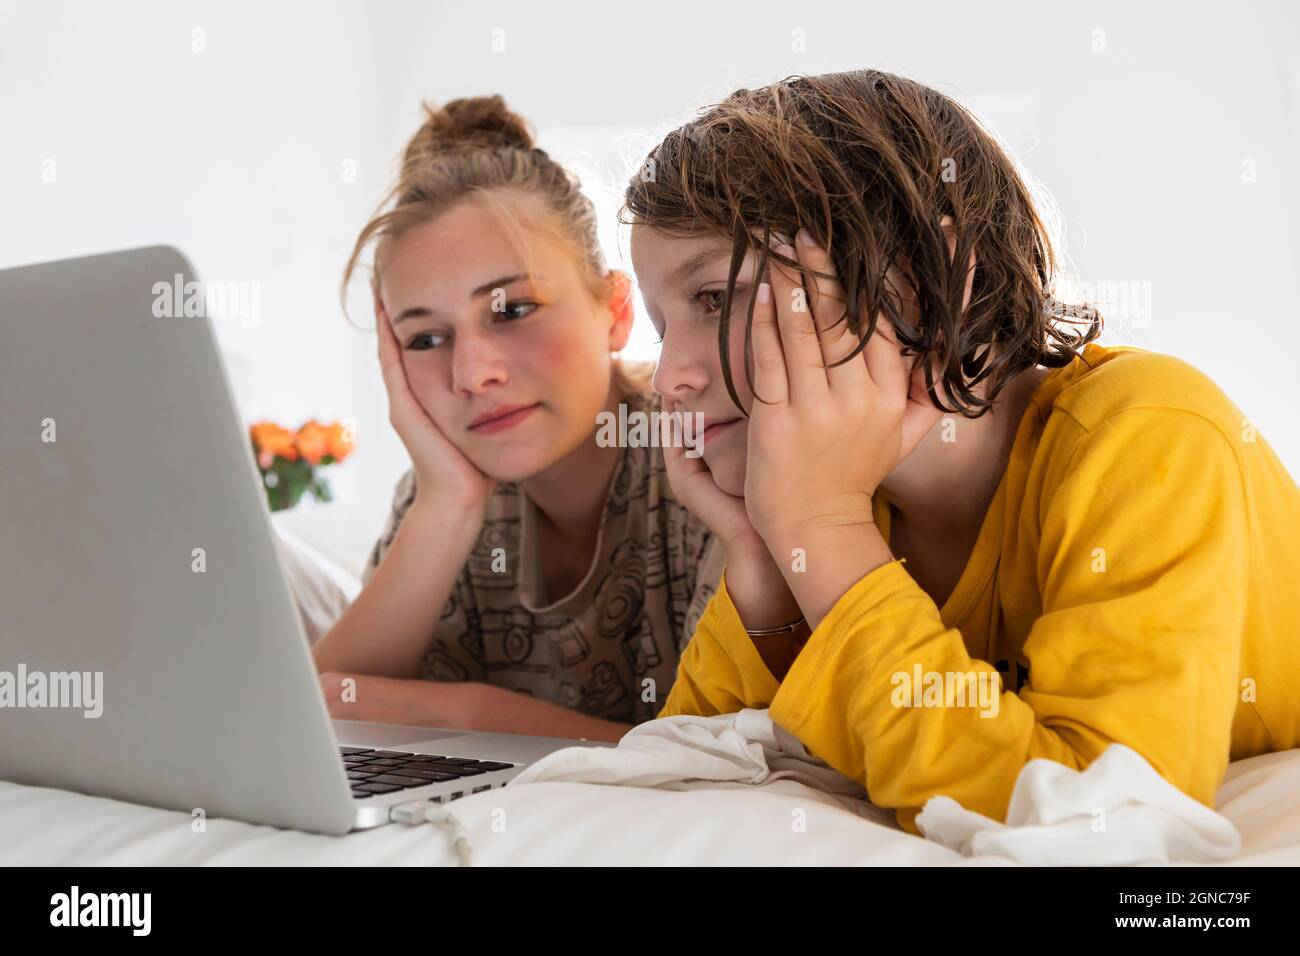 Kleiner Junge und Schwester im Teenageralter, die sich einen Laptop teilen und in einem Schlafzimmer zusehen Stockfoto